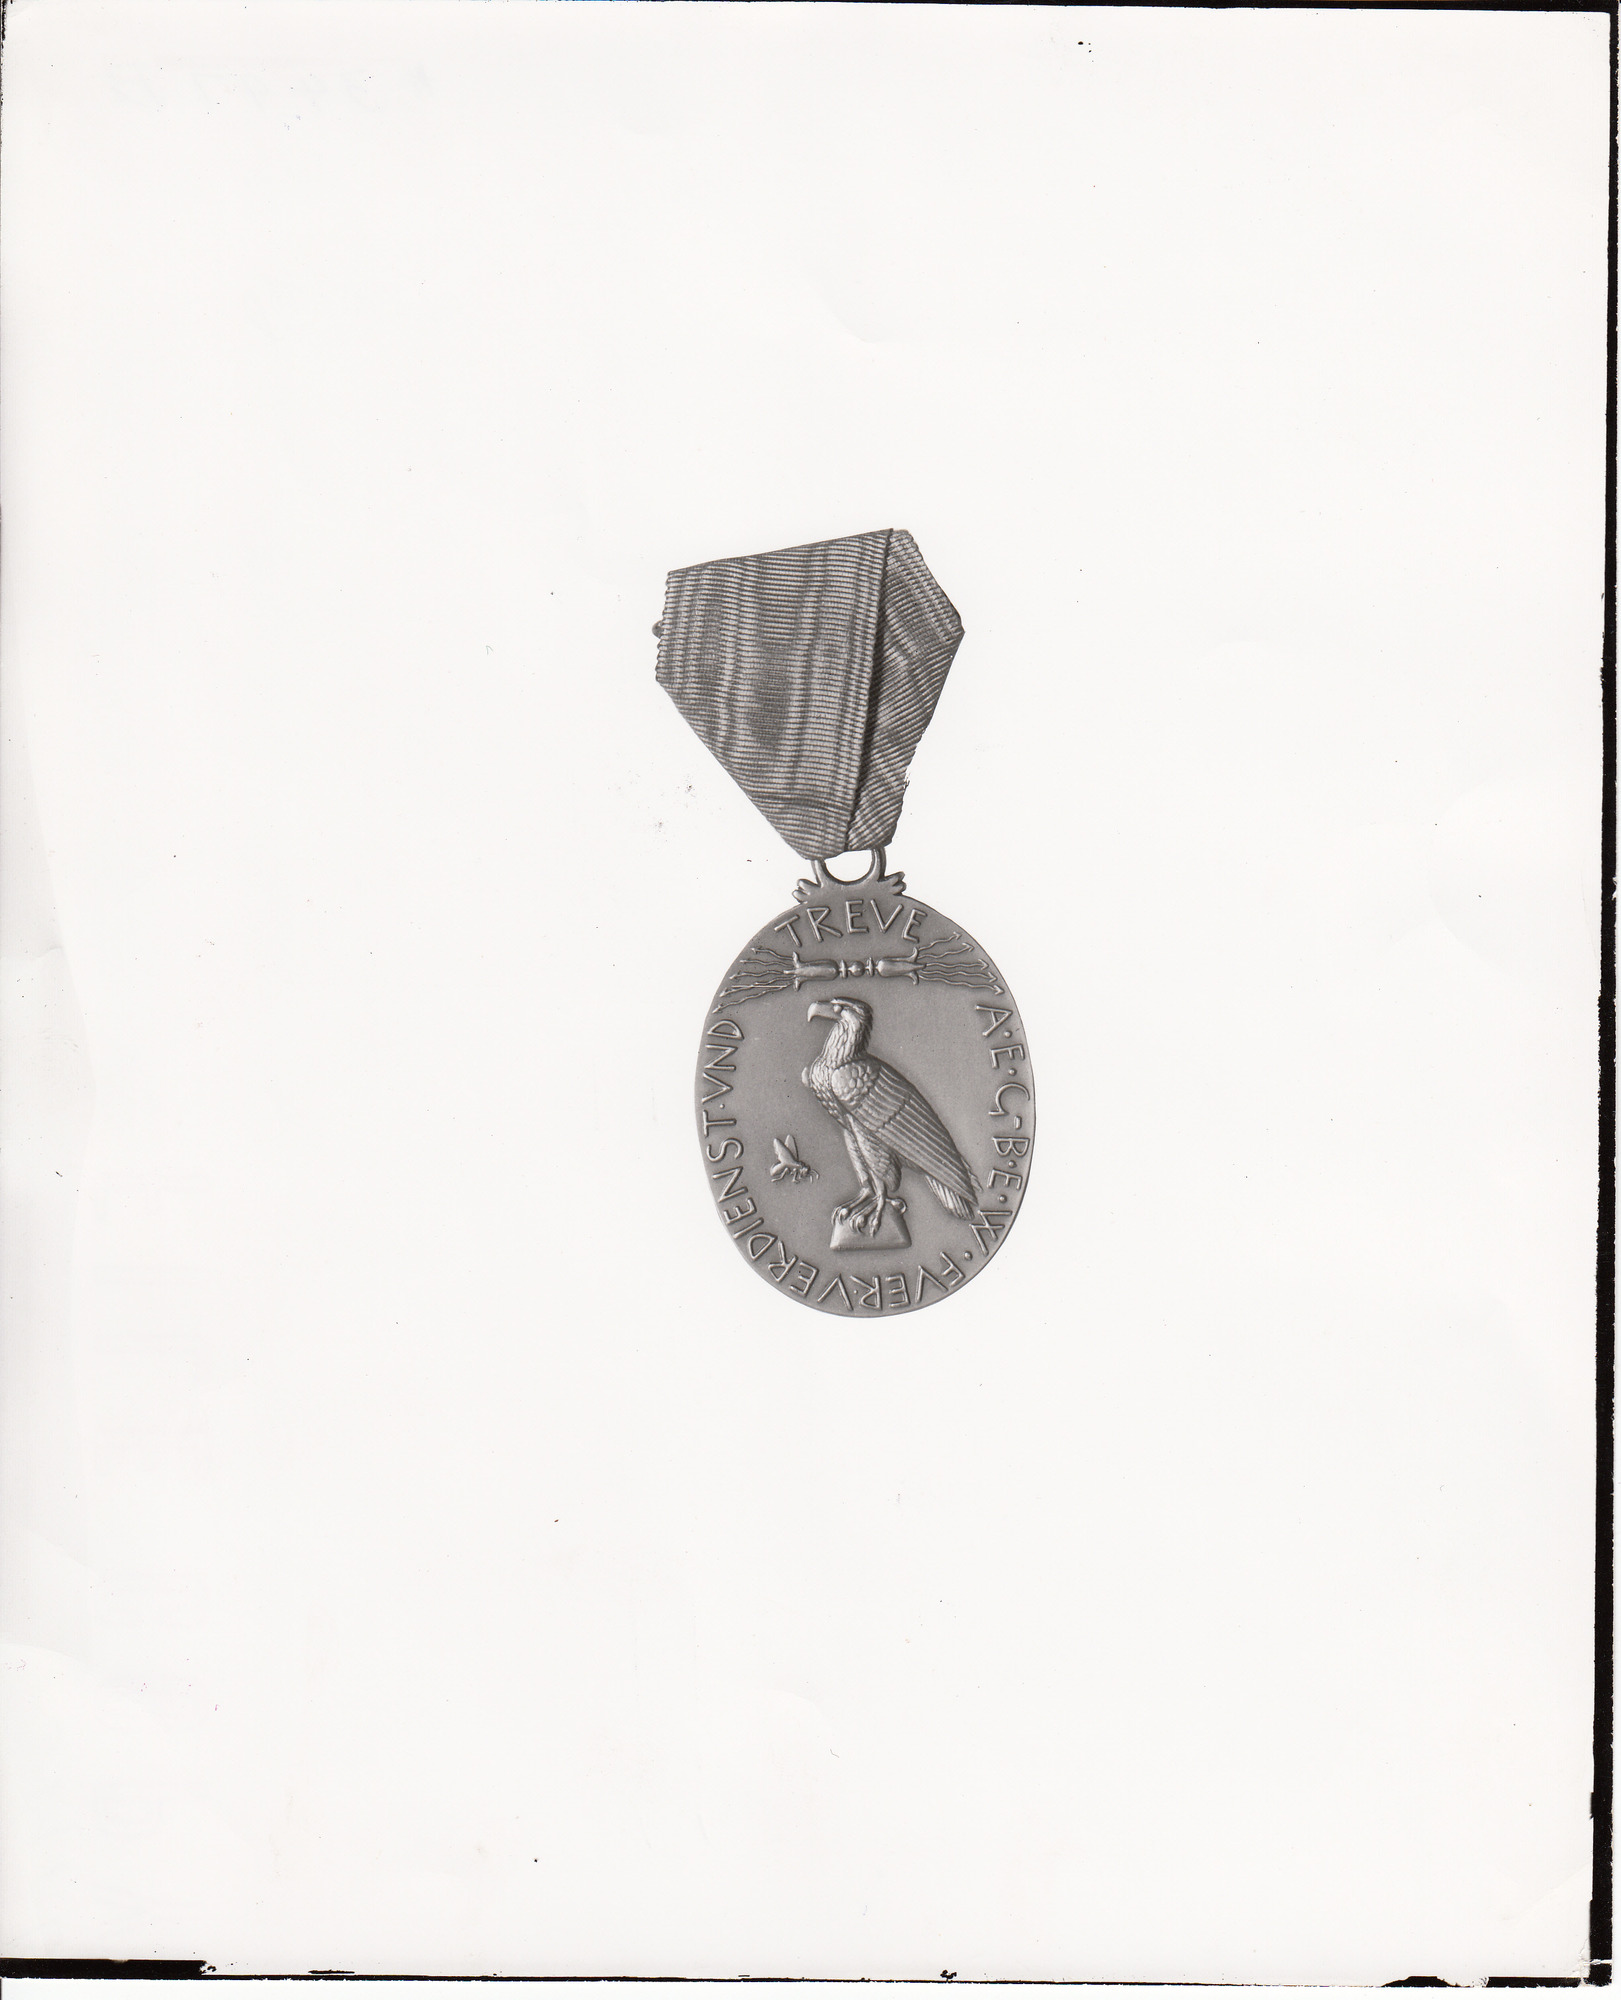 Rathenau medal, rendering of bird.